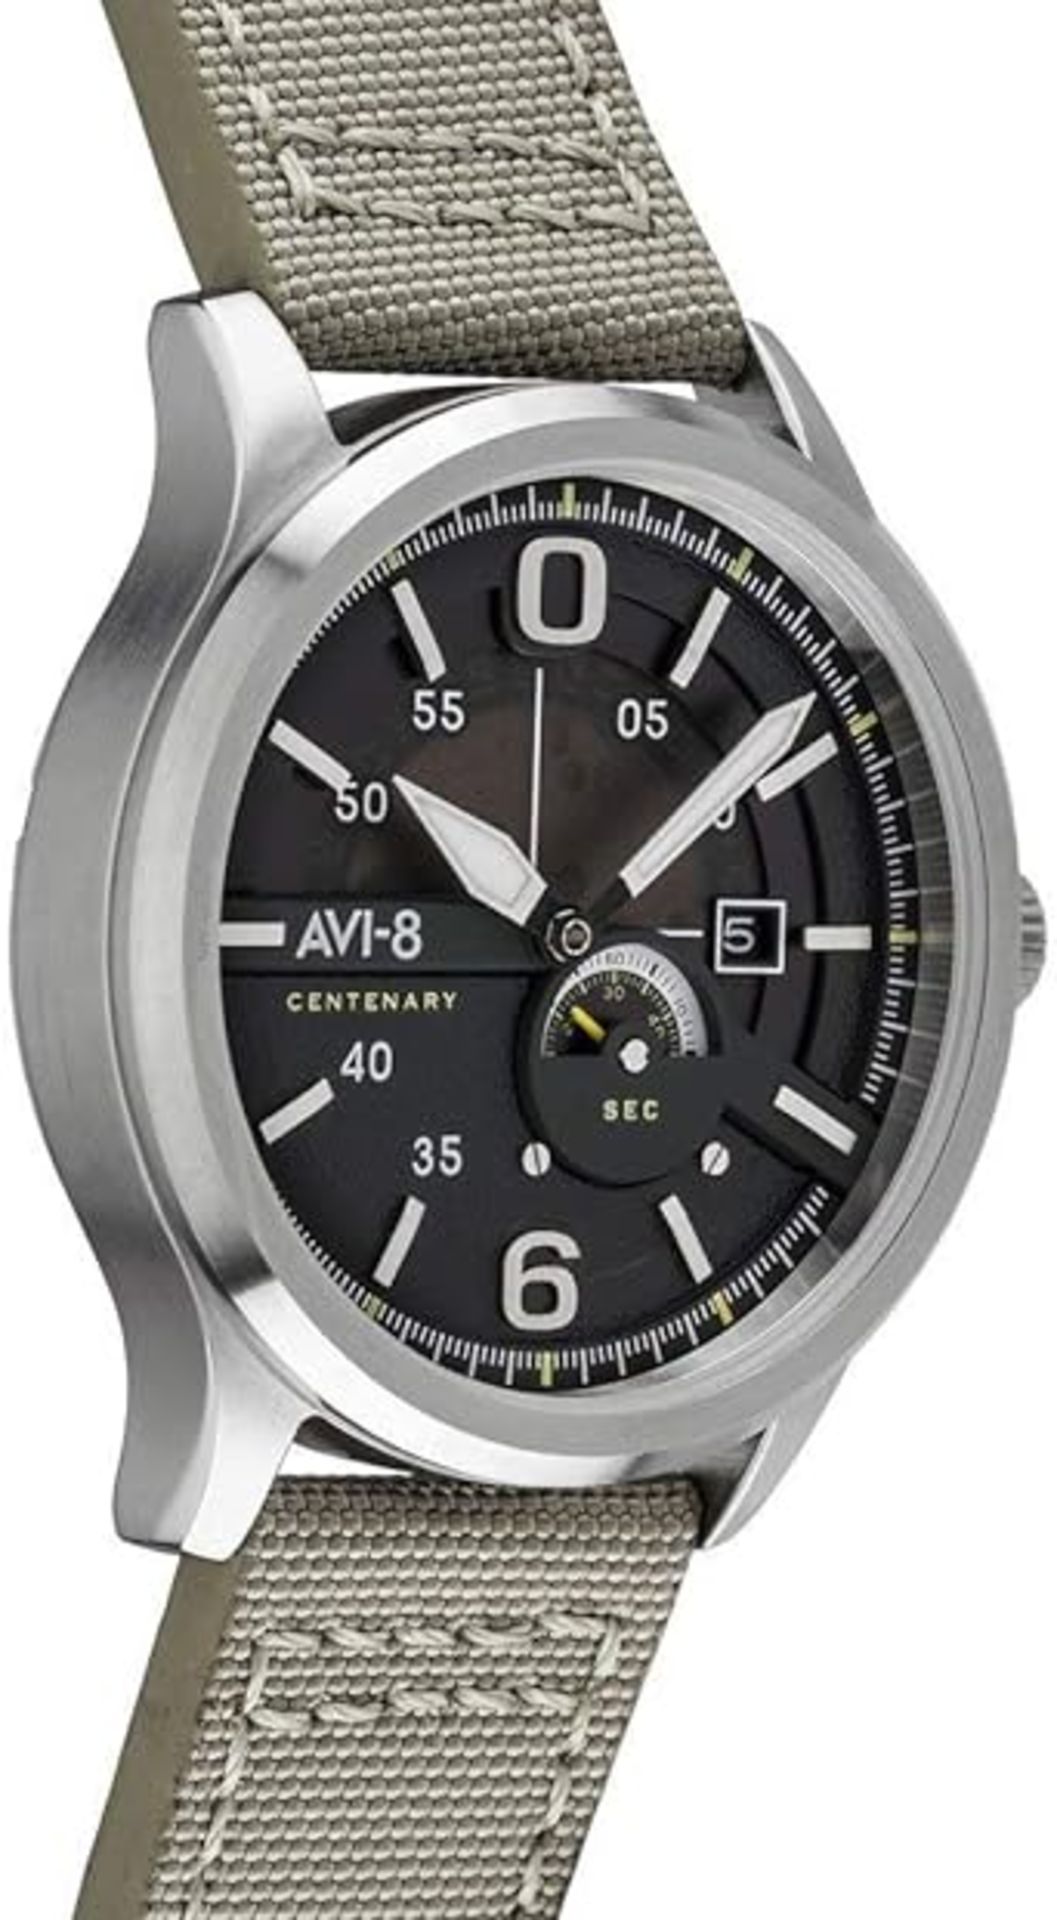 AVI-8 Men's Analog Japanese Quartz Watch with Leather Strap AV-4061-01 - Image 3 of 5